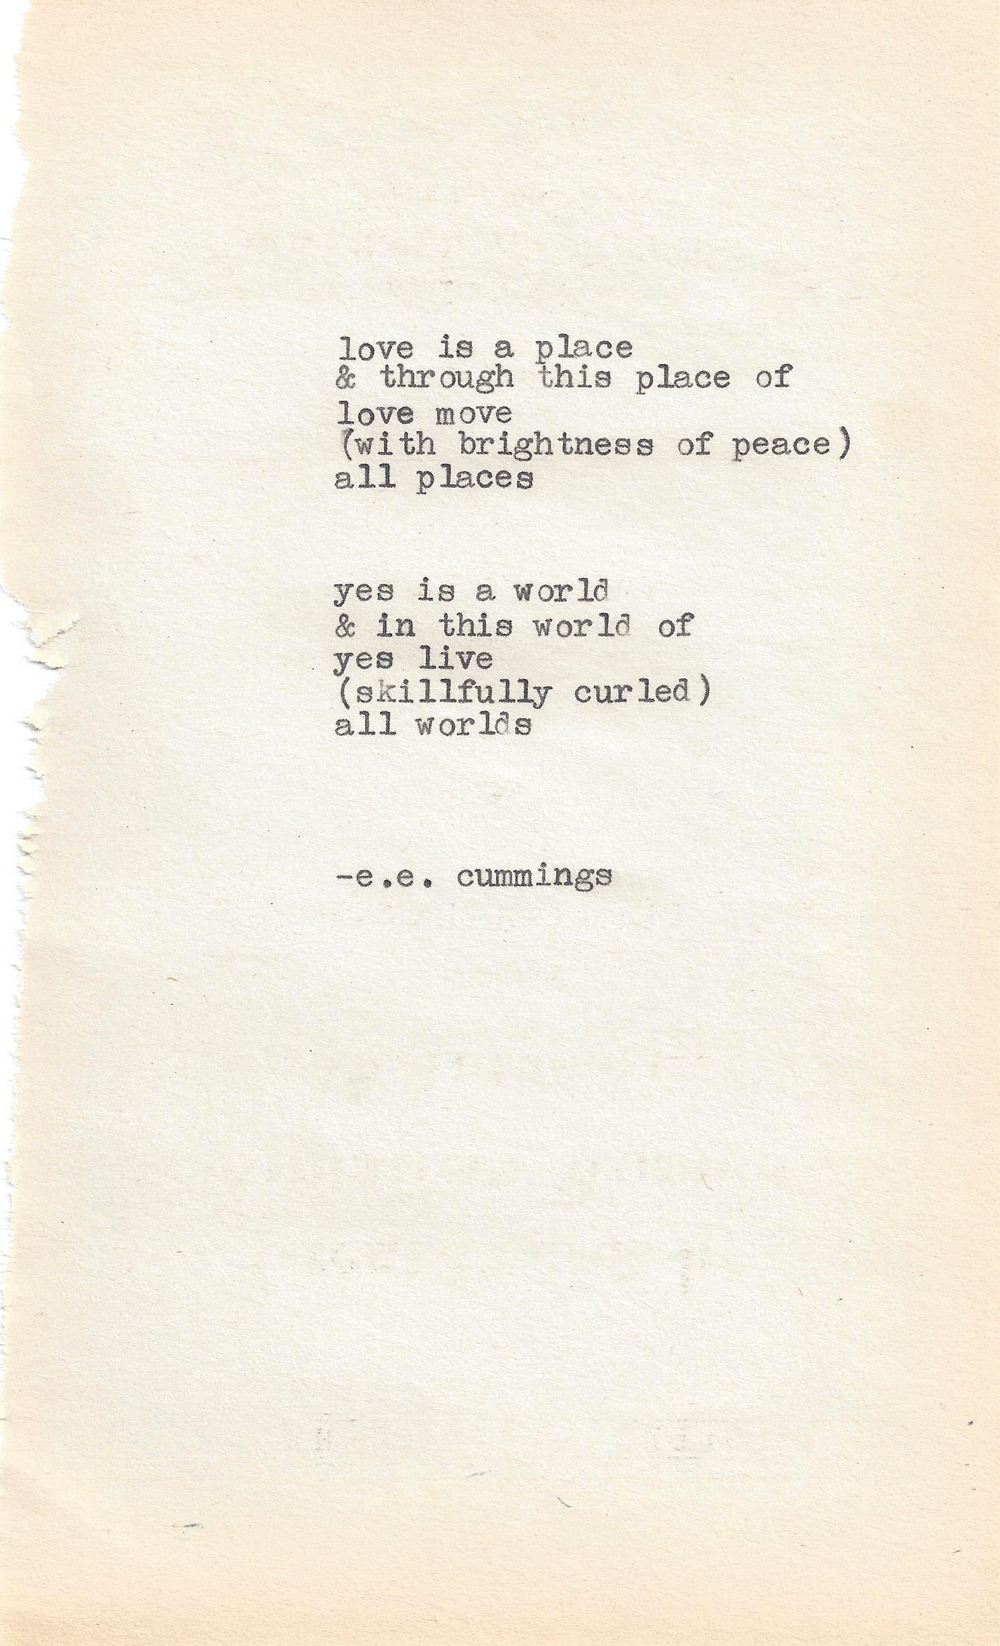 cummings | Short poetry | Pinterest